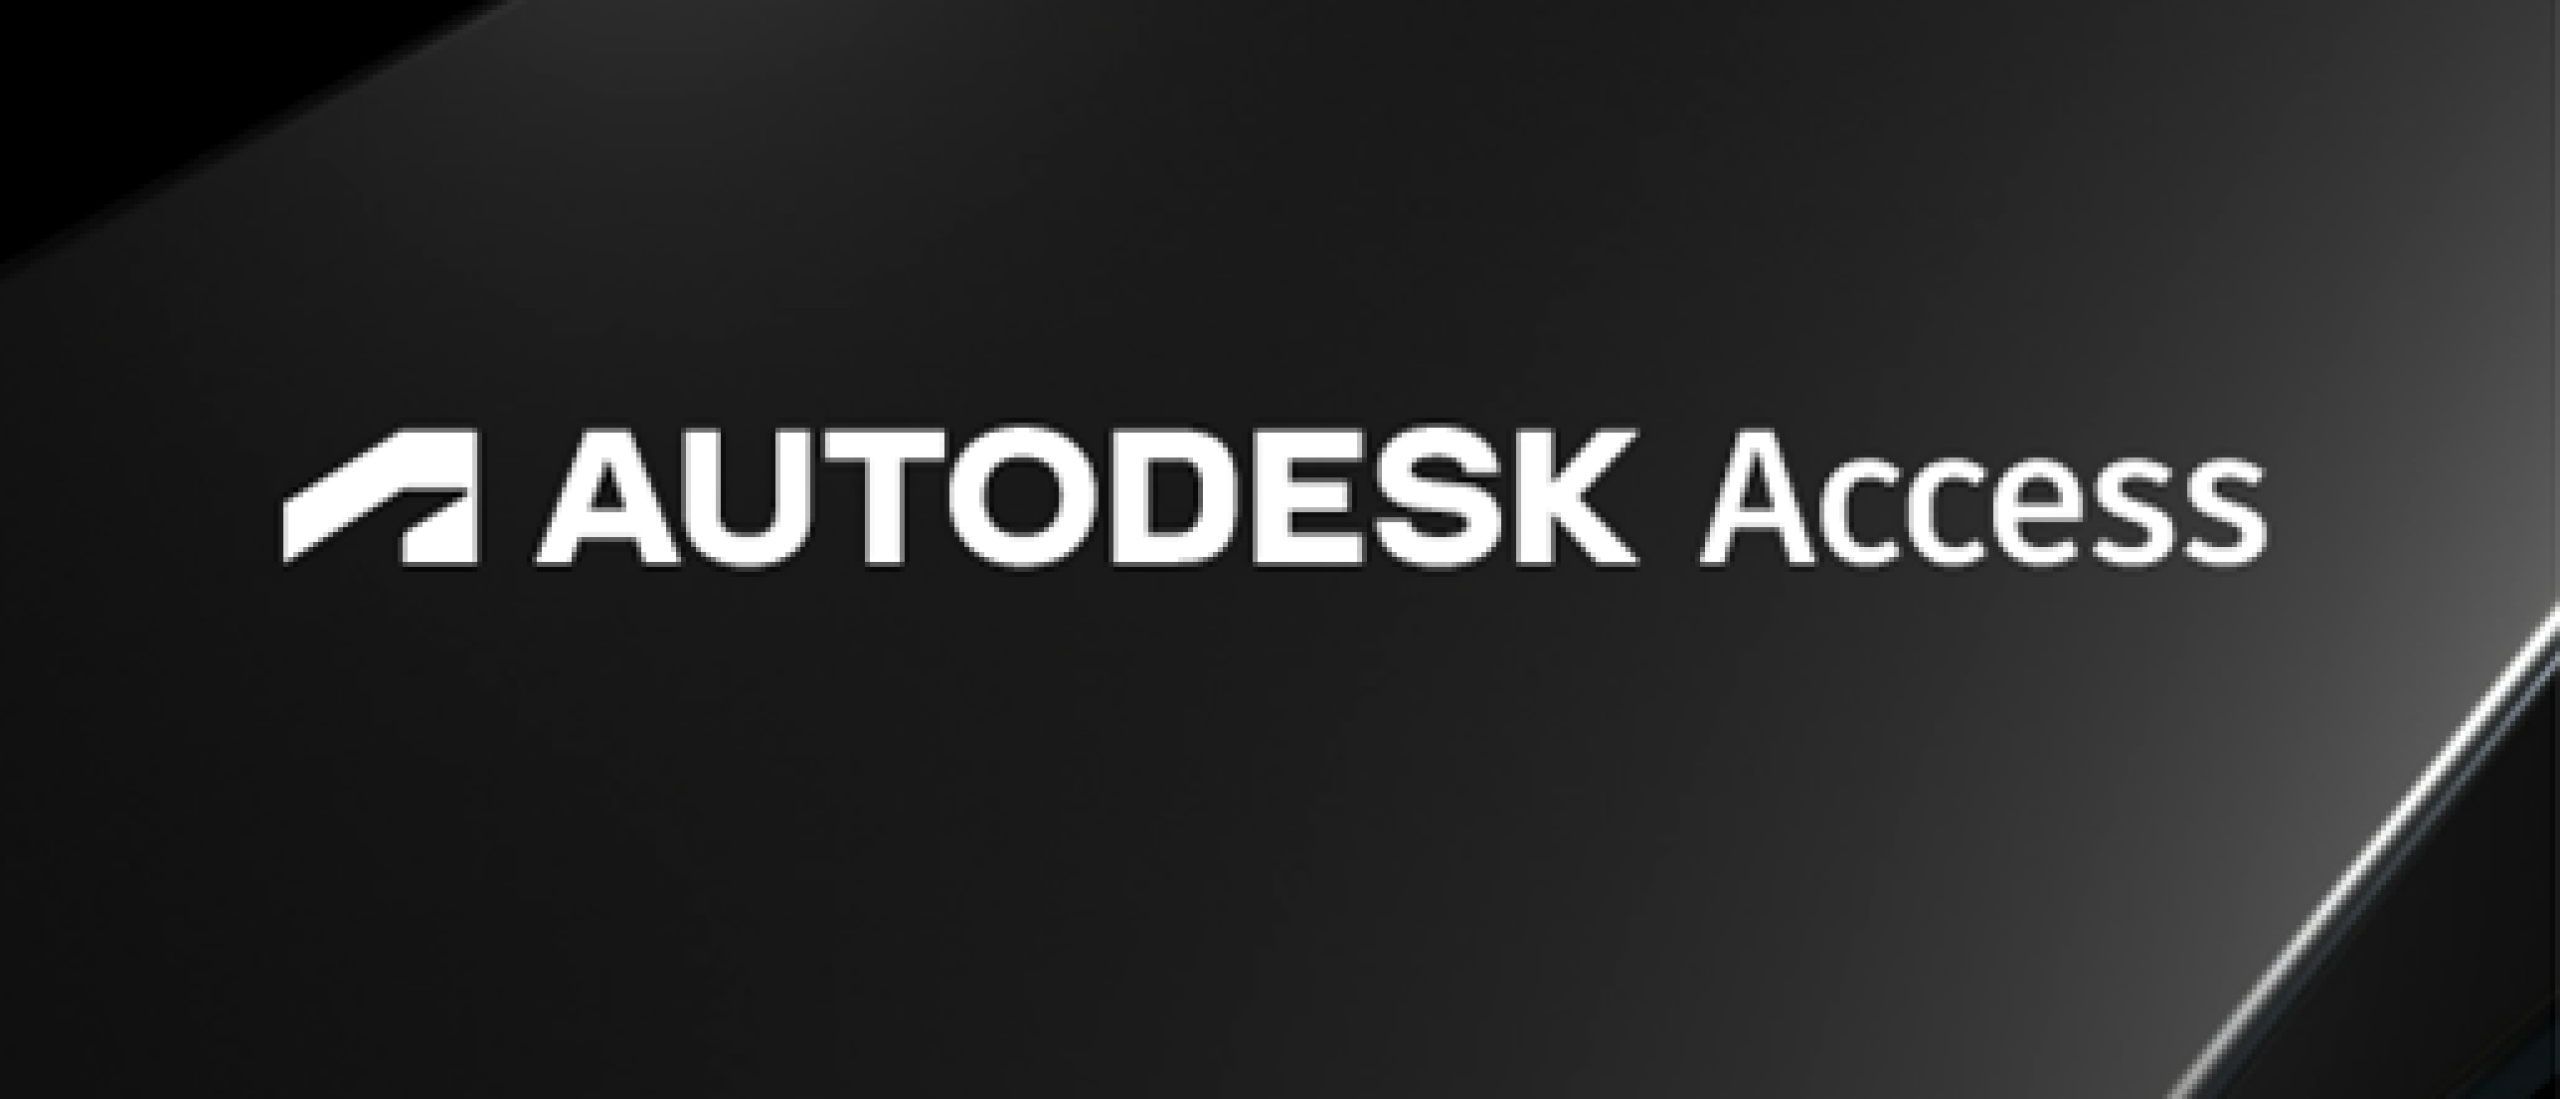 Autodesk Desktop App wordt Autodesk Access